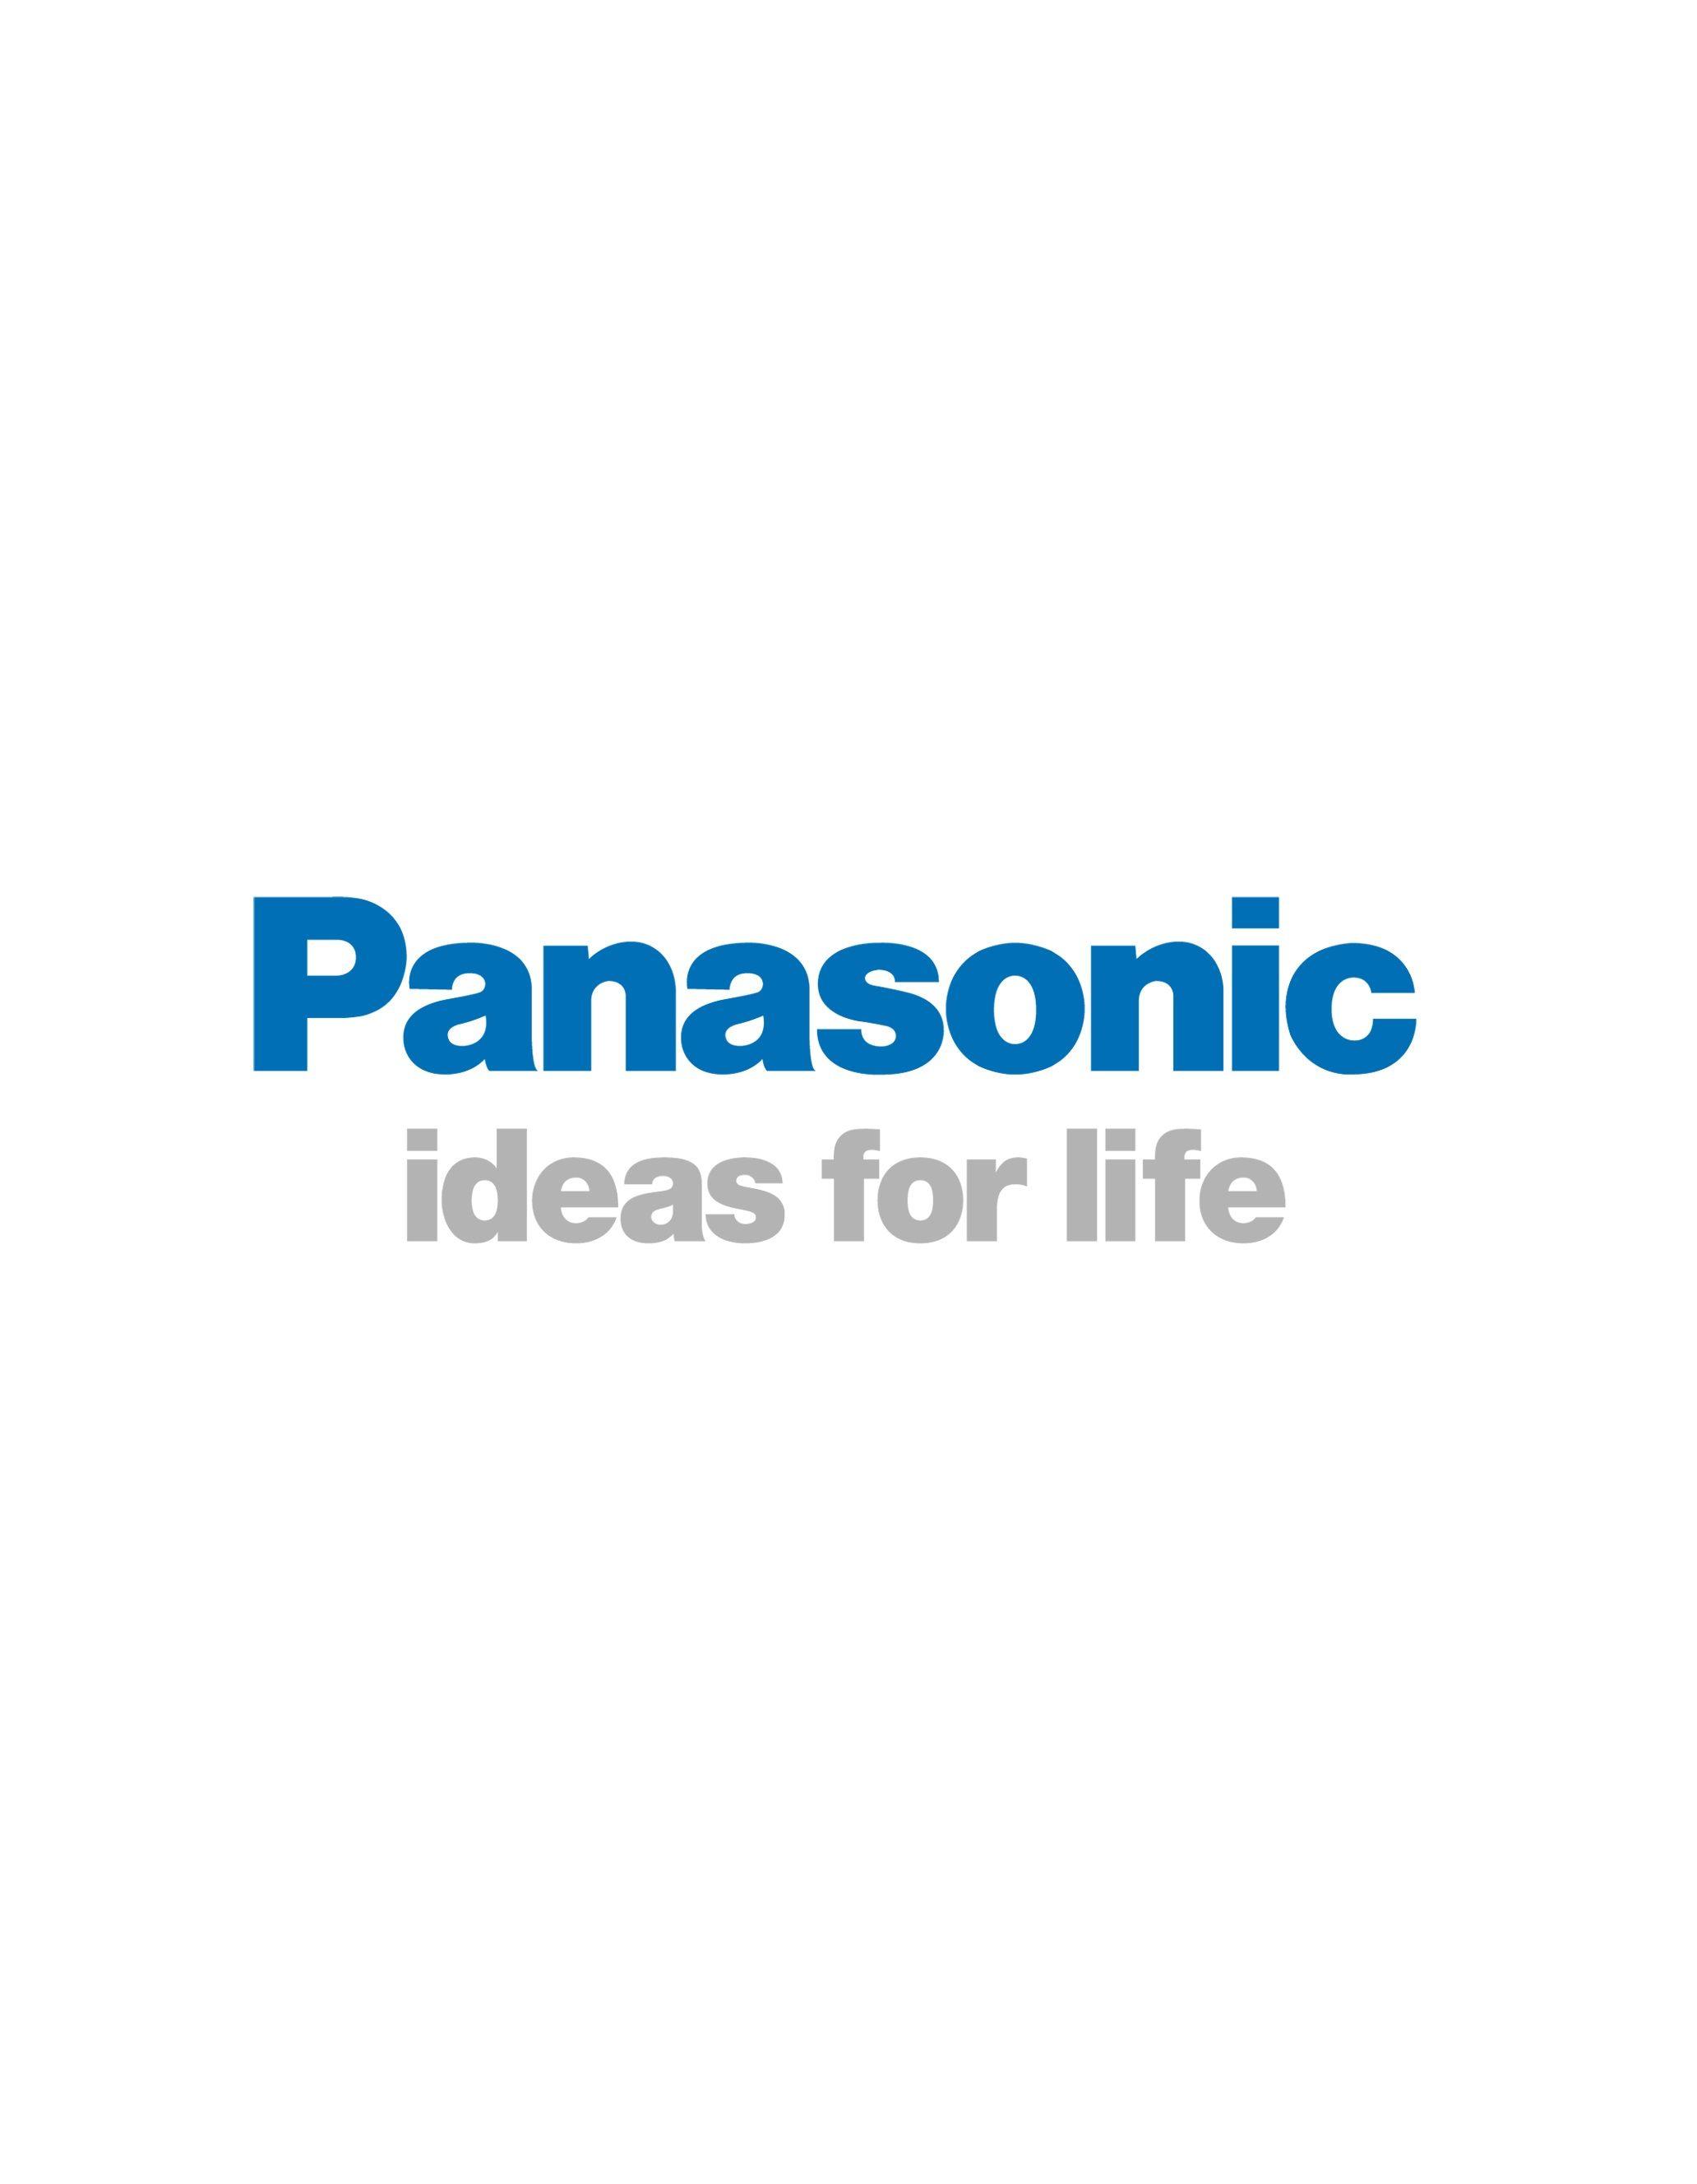 PANASONIC' logo. Logos. Output device, Panasonic remote